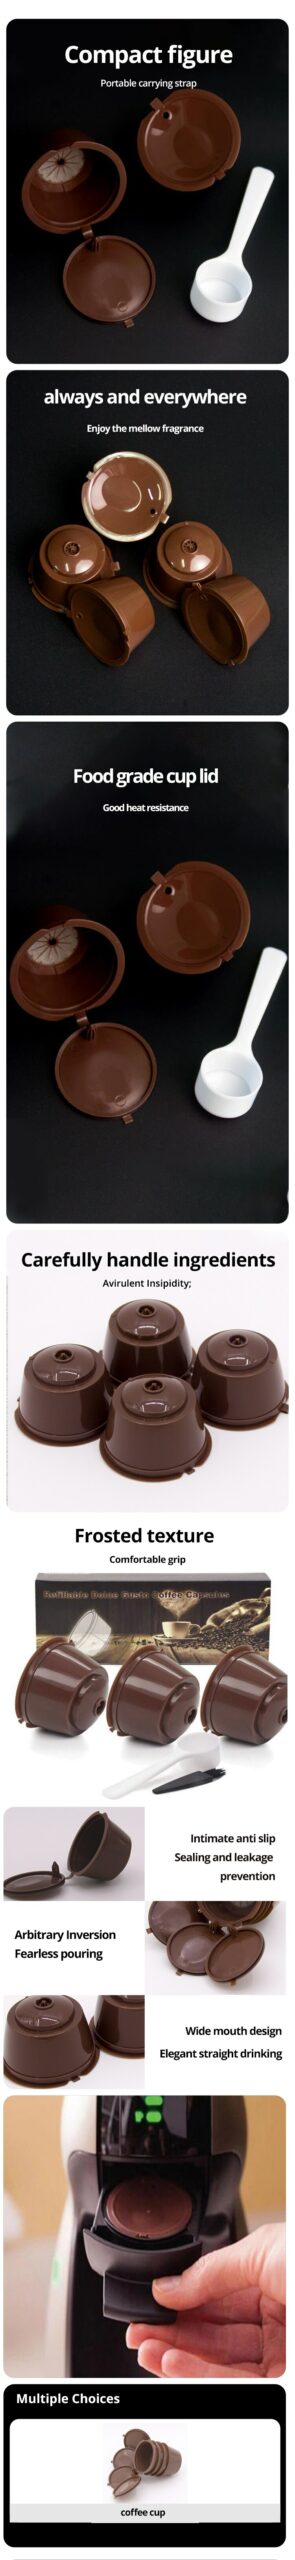 Capsules de café réutilisables, tasses filtrantes, bouchons rechargeables, cuillère, brosse, filtre pour nescafé, 6 pièces